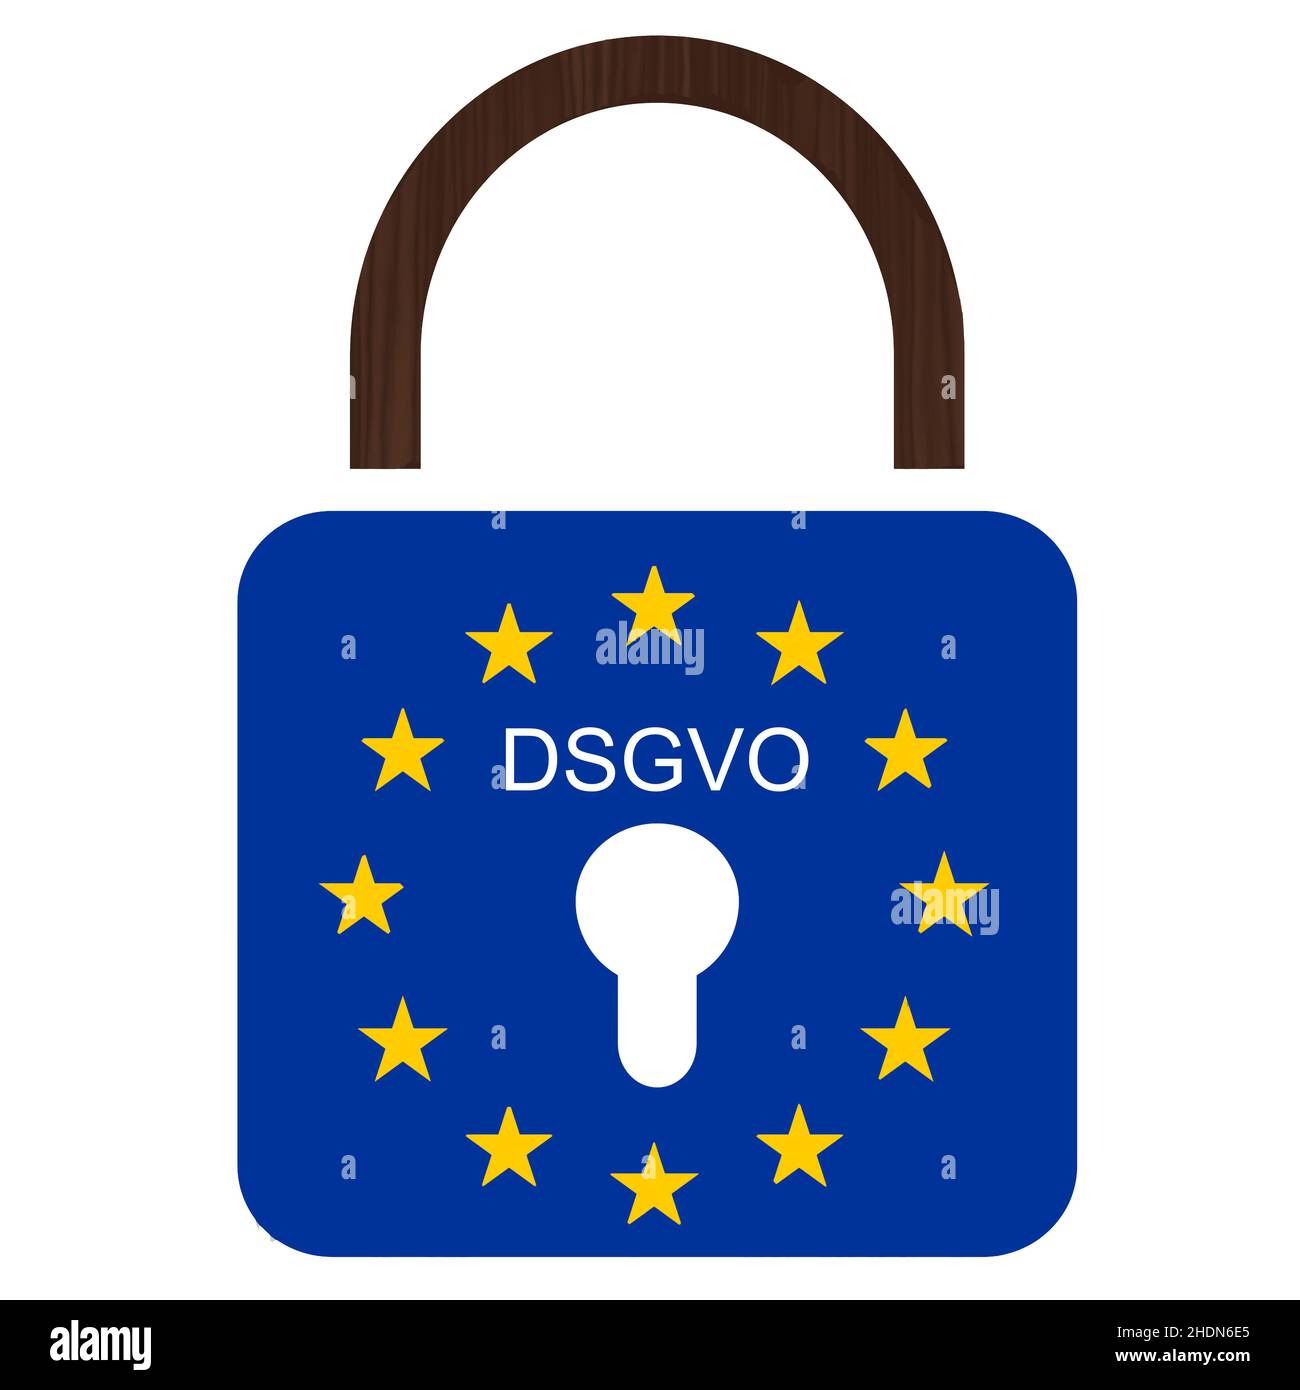 datenschutzrichtlinie, flagge der europäischen Union, dsgvo, Datenschutzrichtlinien, flaggen der europäischen Union Stockfoto